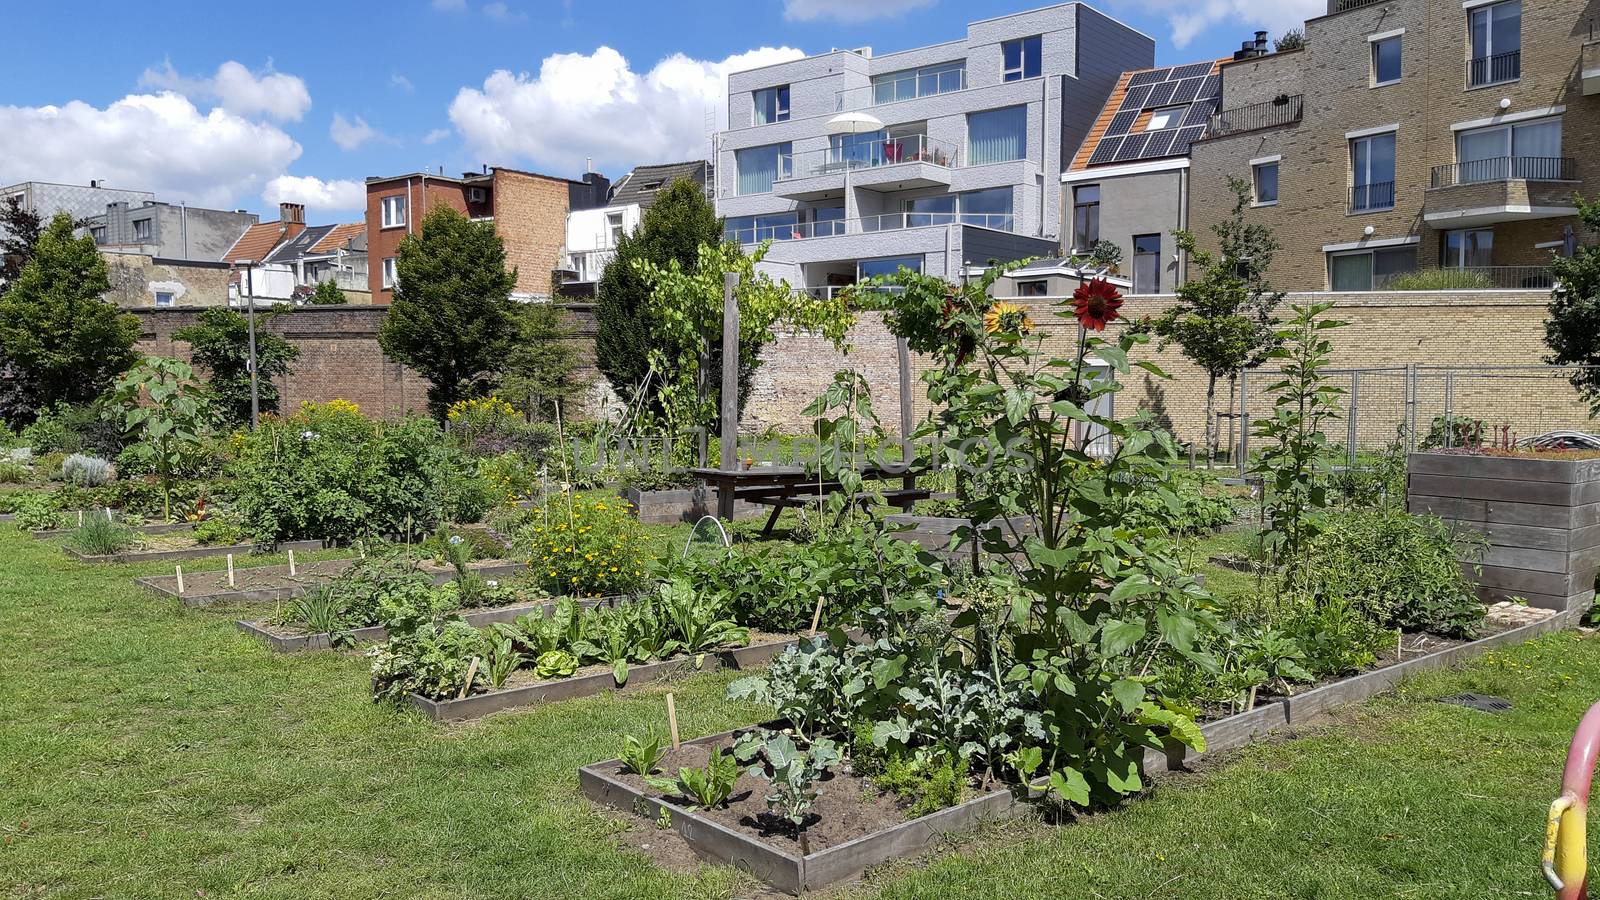 Antwerp, Belgium, July 2020: city garden or allotment community garden in the Groen Kwartier district in Antwerp, Belgium